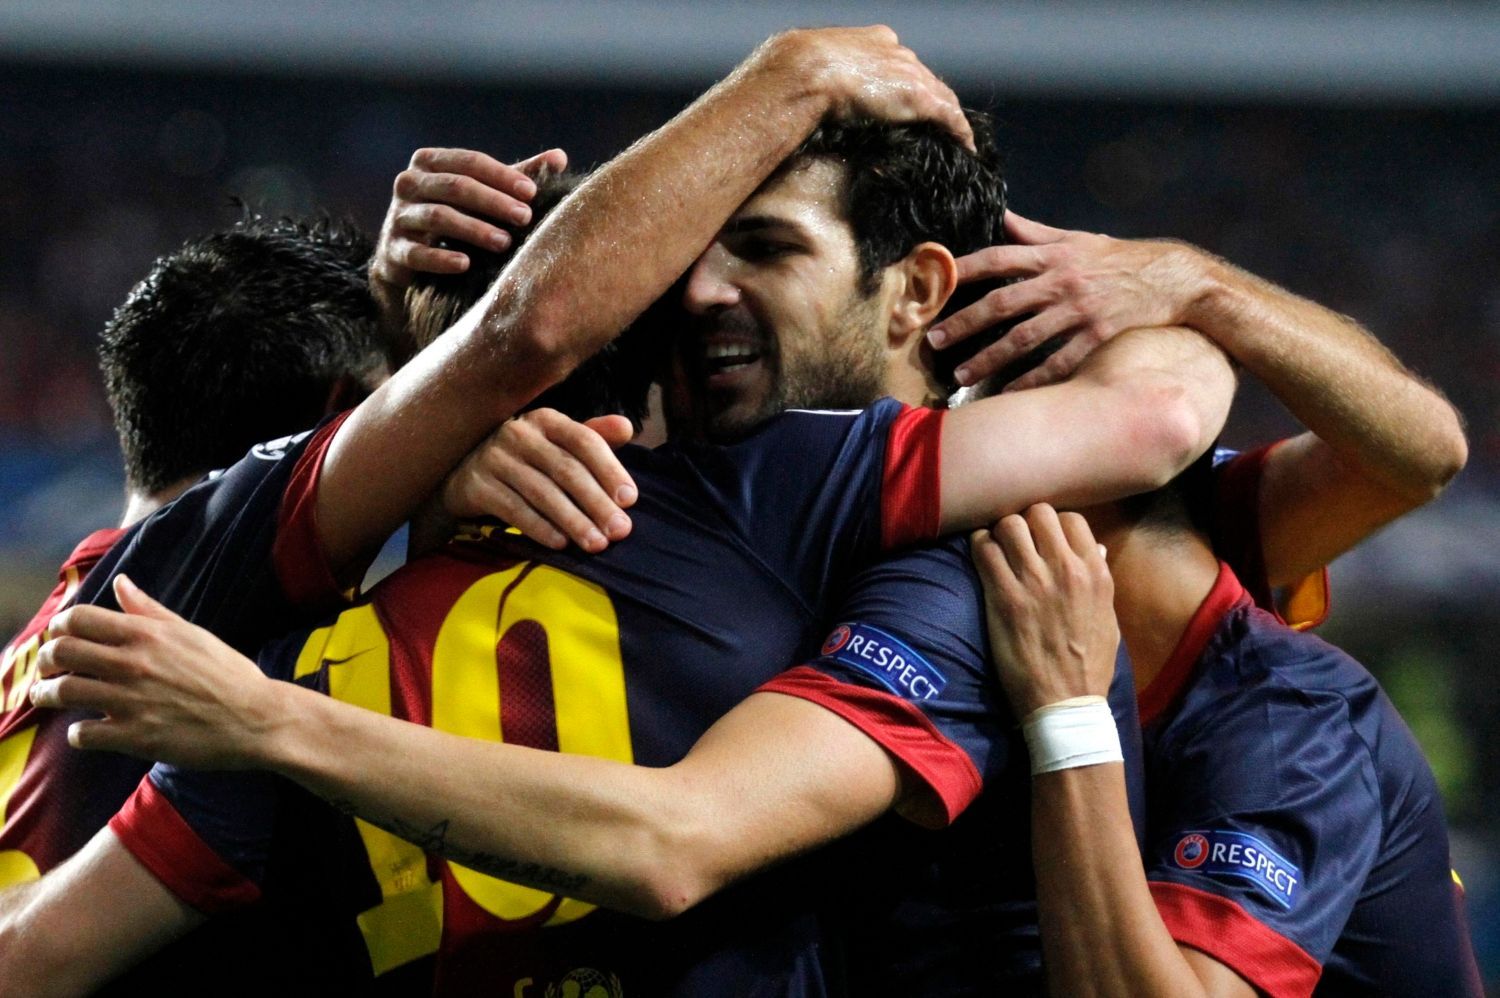 Fotbalisté Barcelony slaví gól Cesca Fábregase v utkání Ligy mistrů 2012/13 proti Benfice Lisabon.